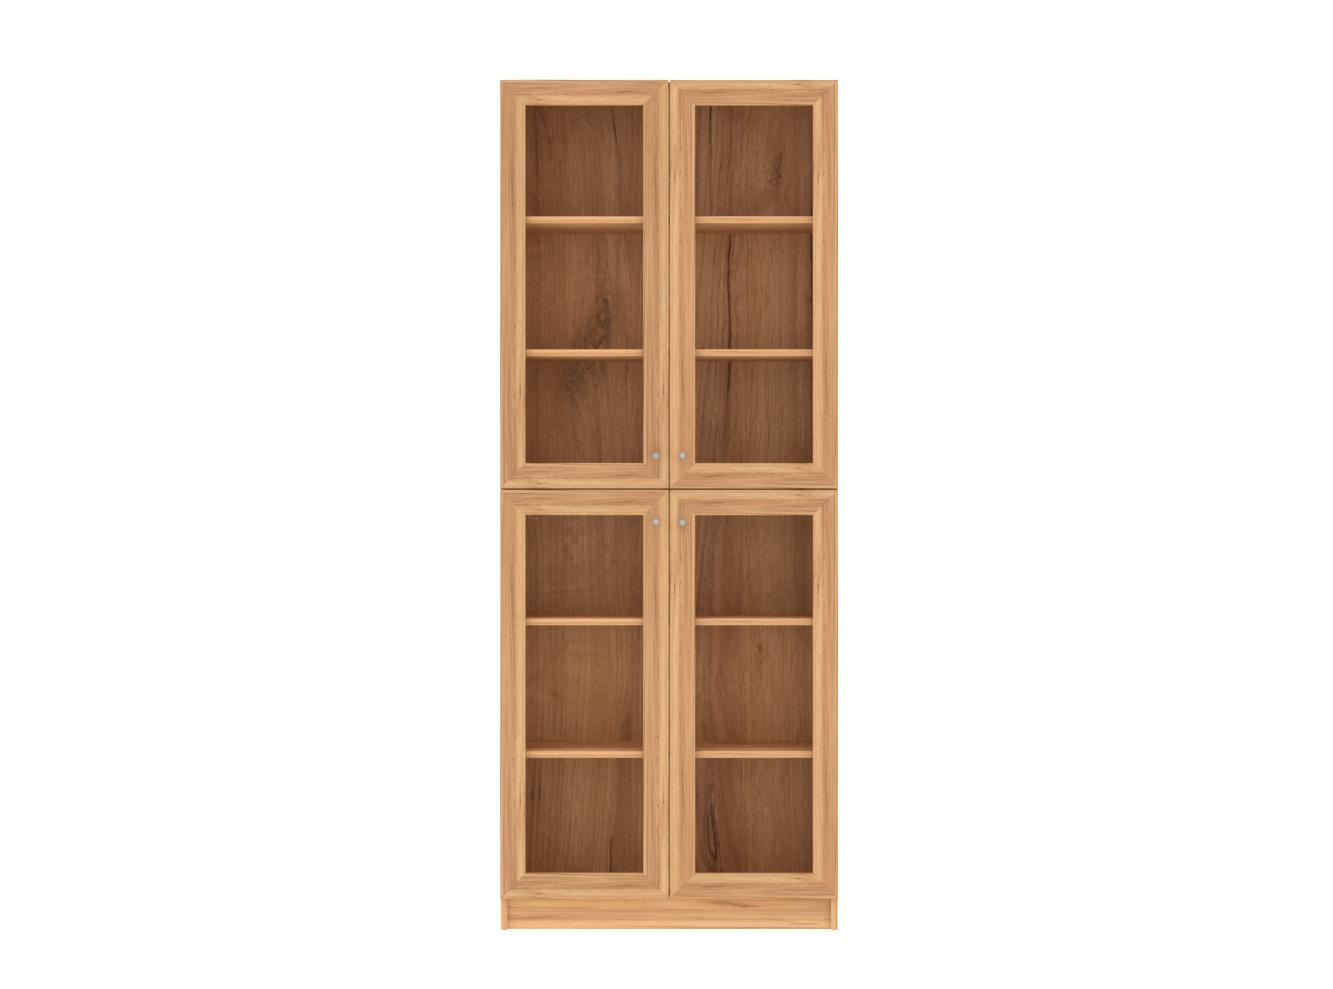 Книжный шкаф Билли 335 oak gold craft ИКЕА (IKEA) изображение товара